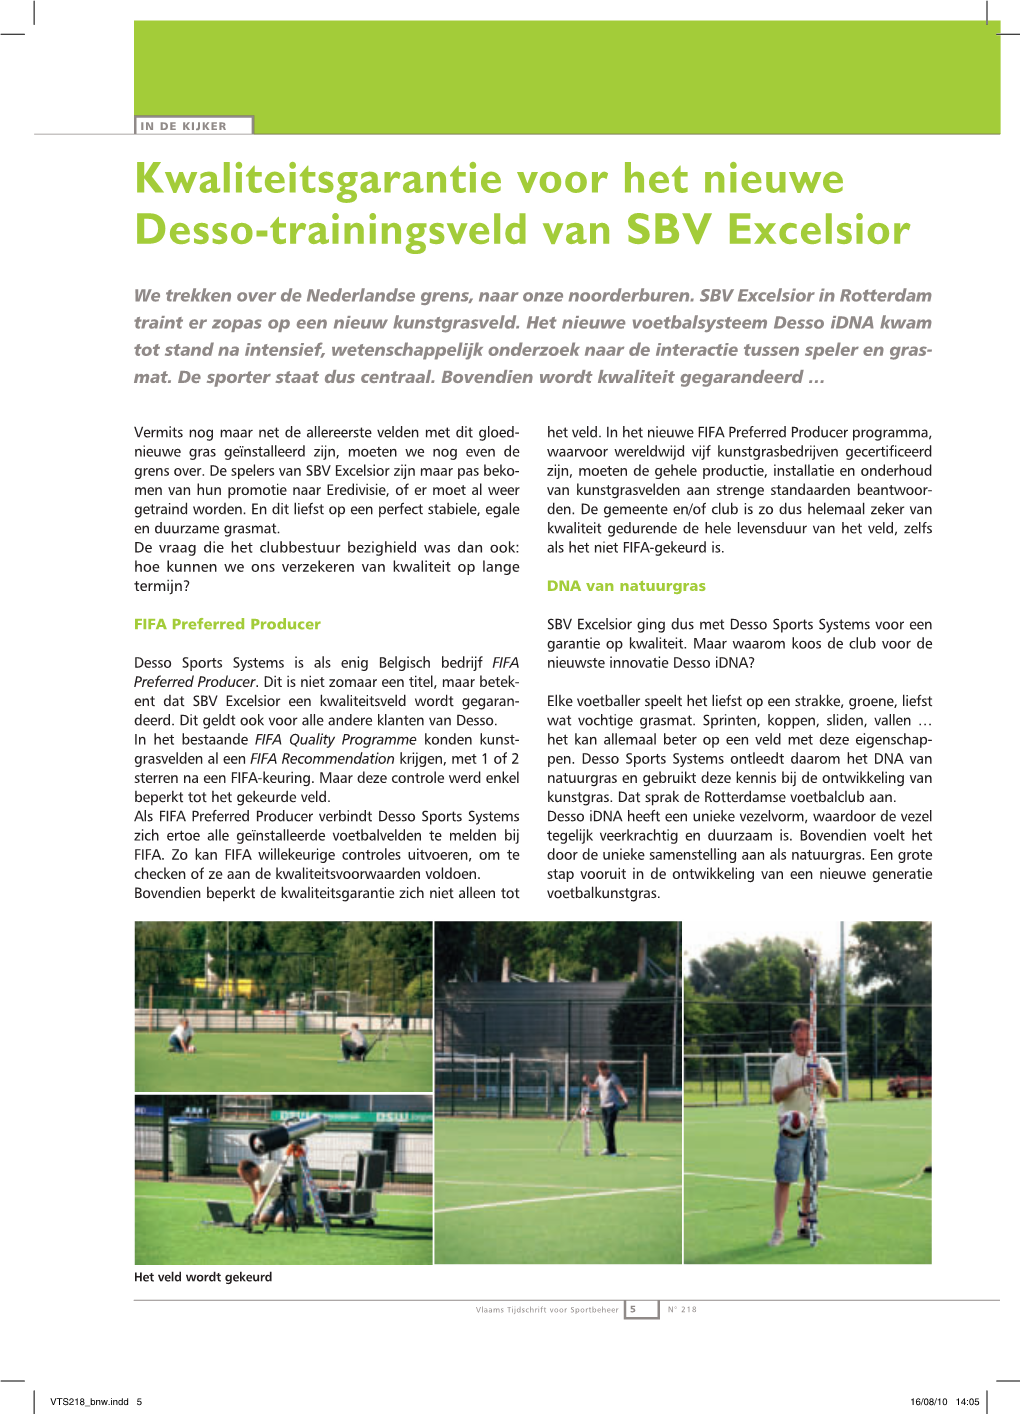 Kwaliteitsgarantie Voor Het Nieuwe Desso-Trainingsveld Van SBV Excelsior